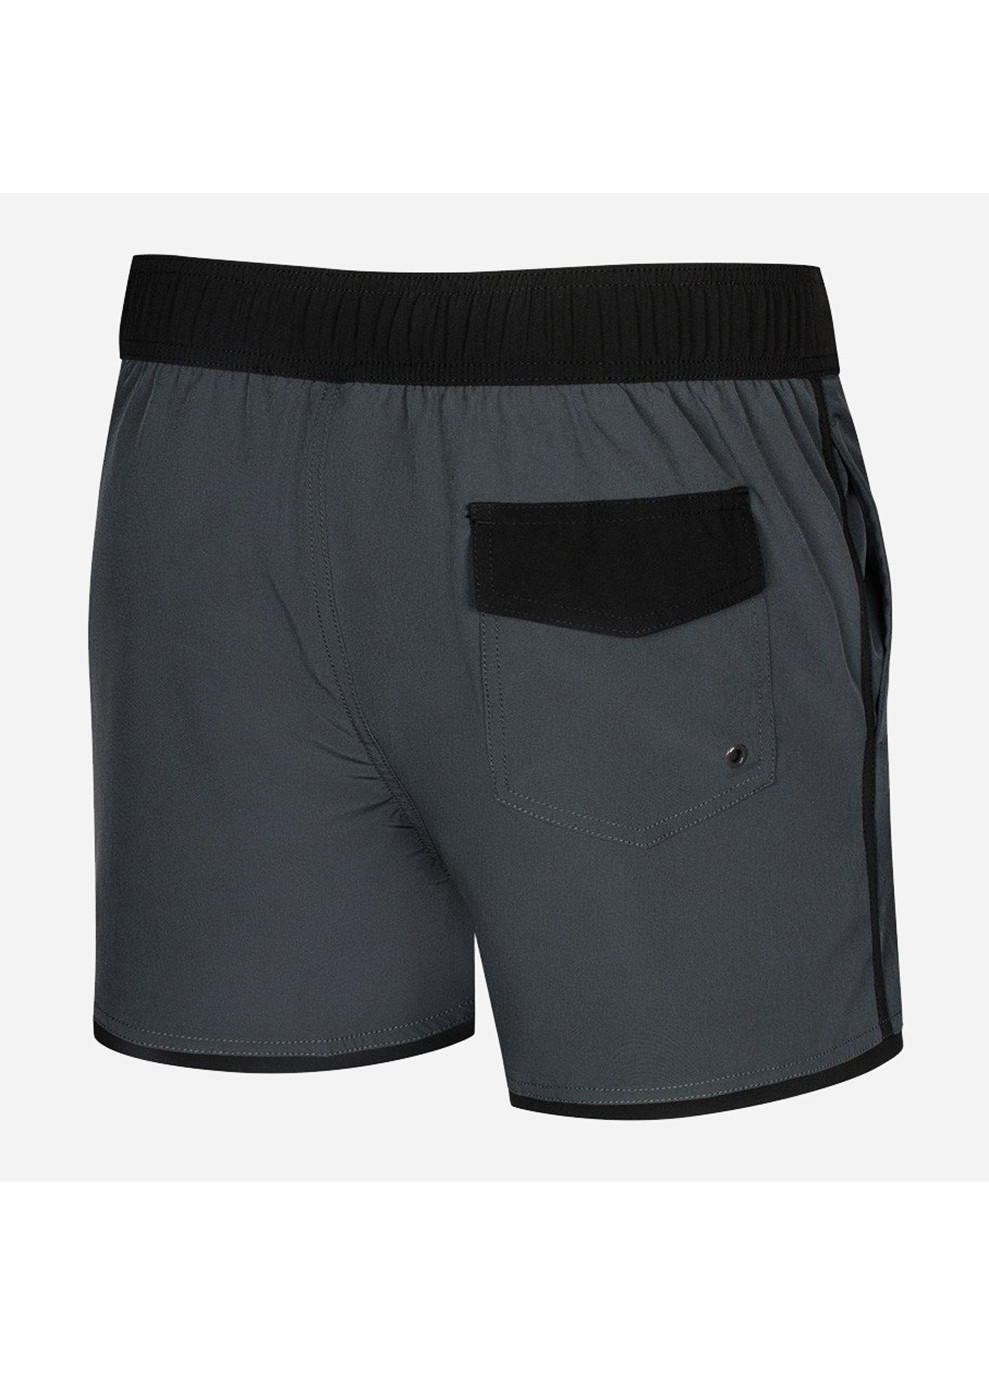 Мужские серые спортивные пляжные шорты axel 337-37 темно-серый/черный Aqua Speed